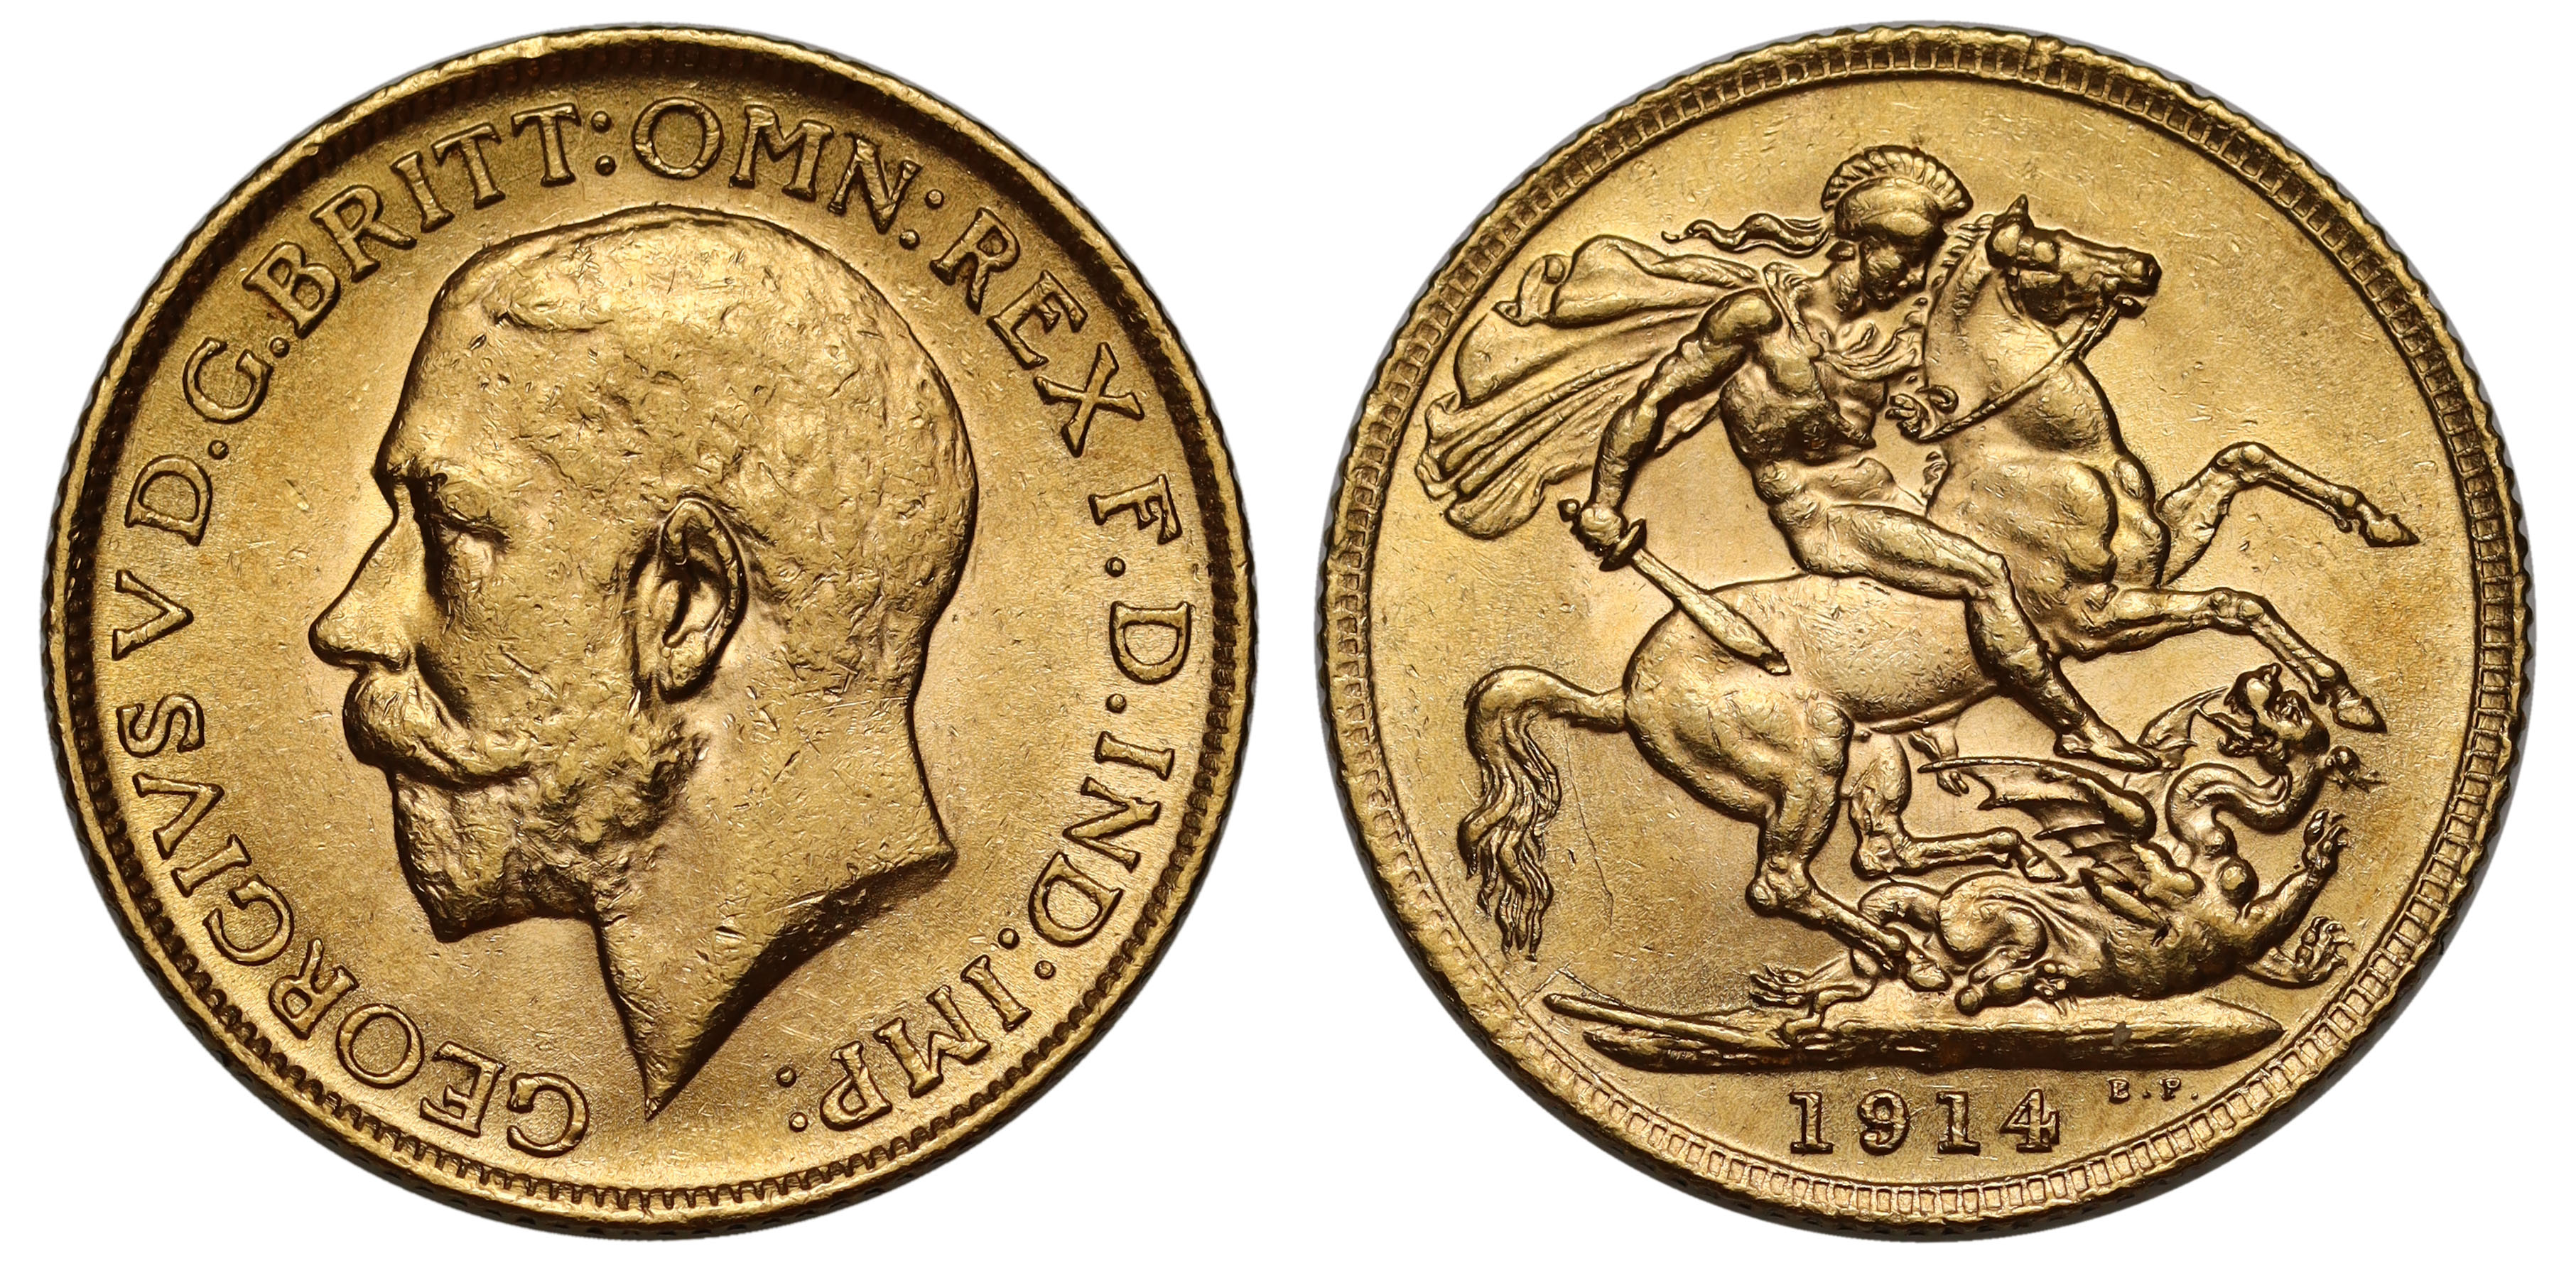 g George V (1910-36), gold Sovereign, 1914, bare head left, BM on truncation for engraver Bertram